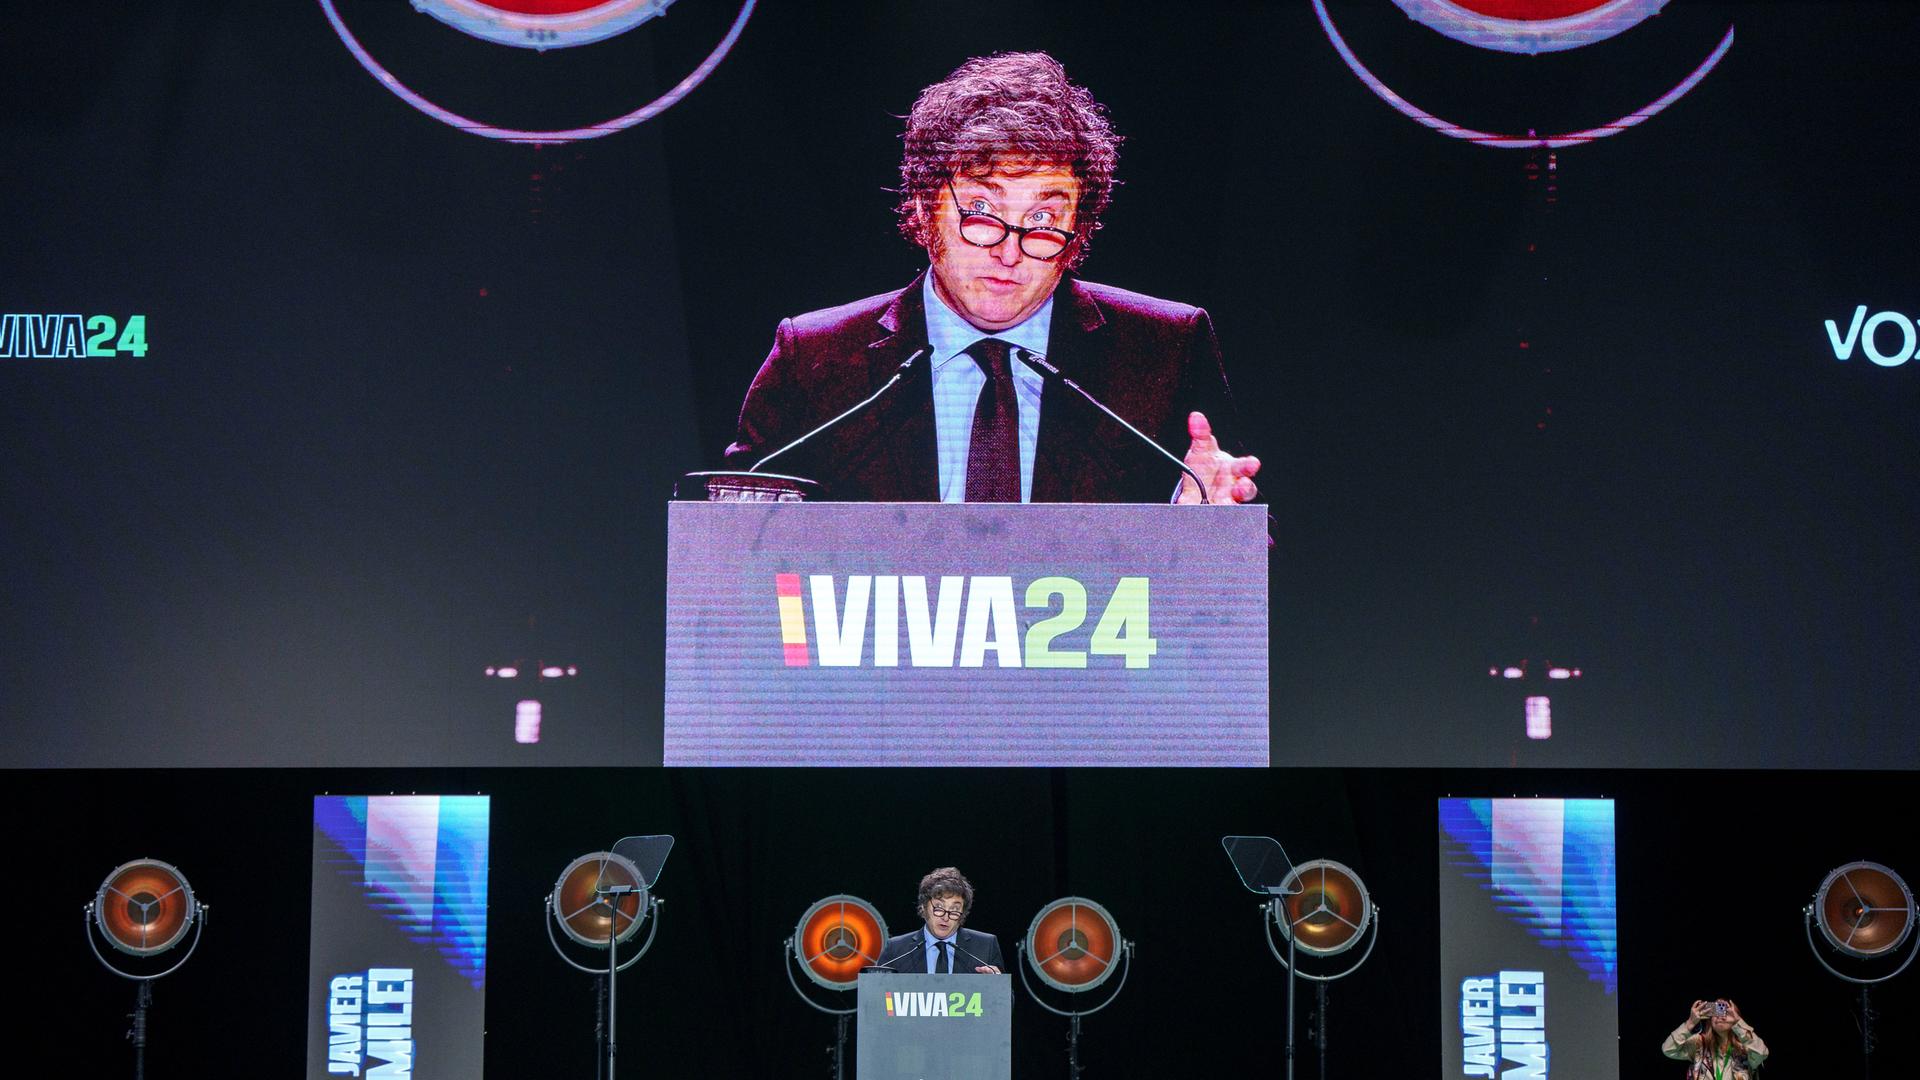 Argentiniens Präsident Javier Milei steht auf einer Bühne hinter einem Rednerpult mit der Aufschrift "Viva24". Sein Bild wird dahinter auf eine riesige Video-Leinwand übertragen. 